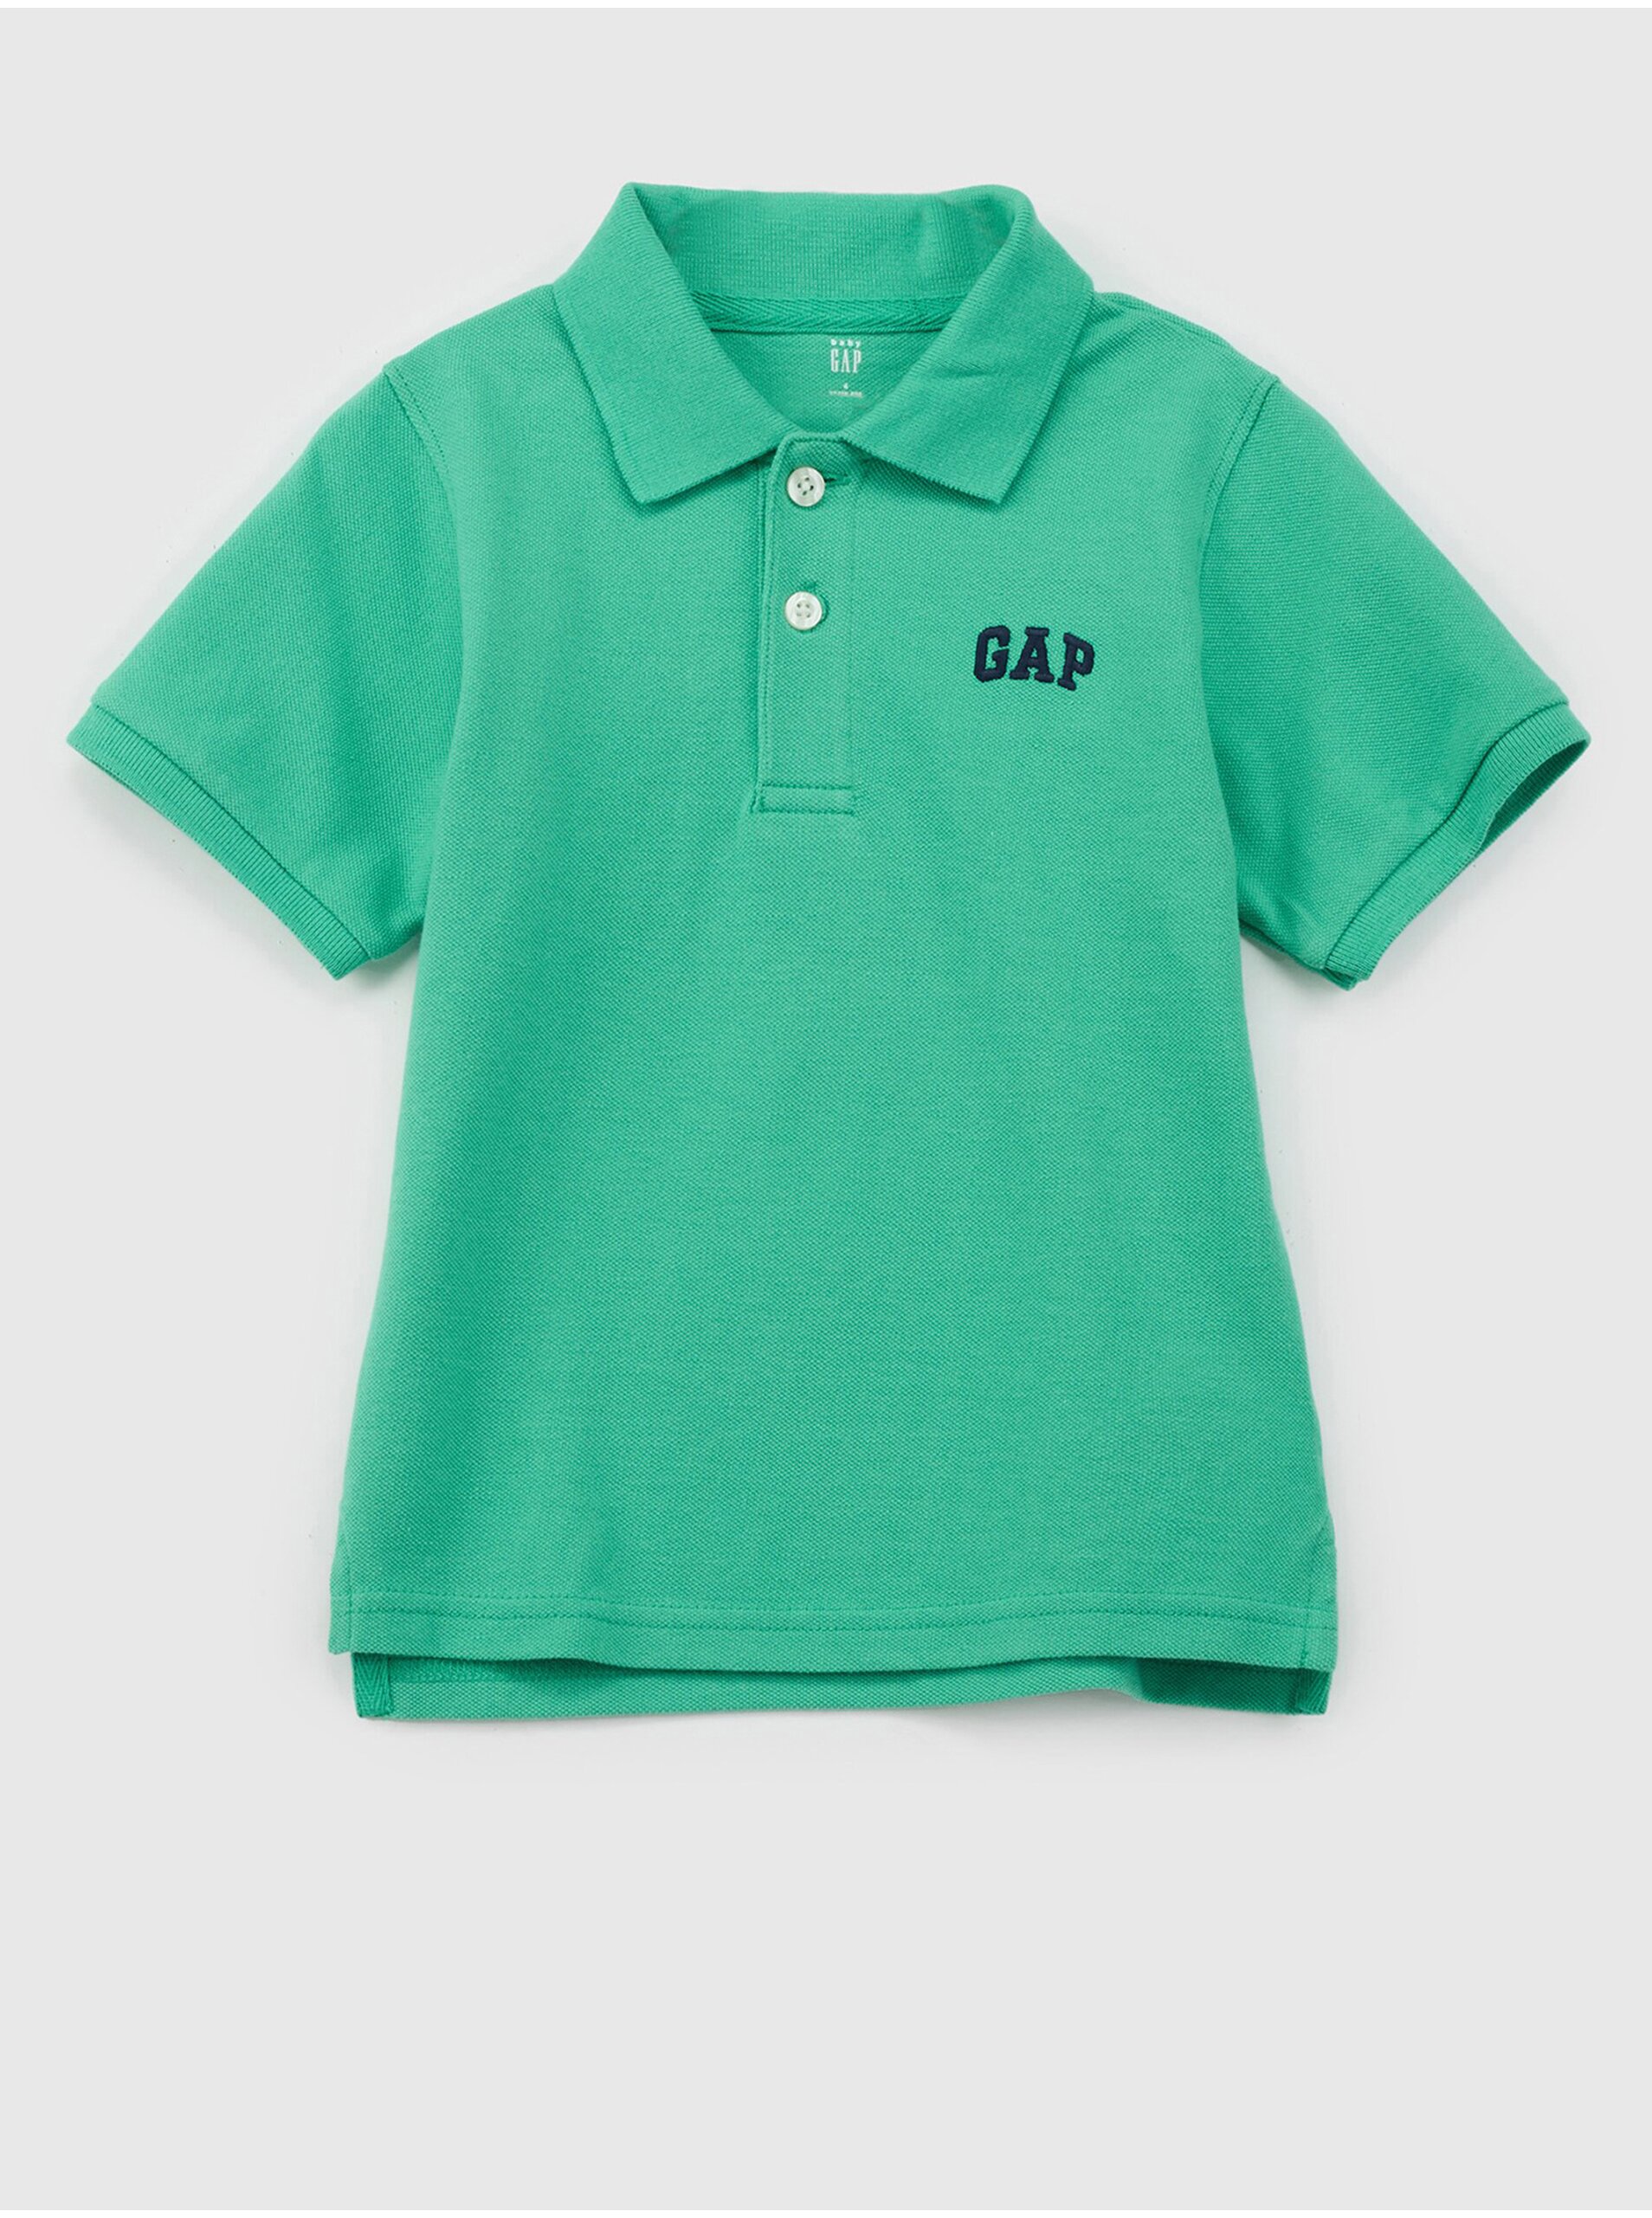 Lacno Zelené chlapčenské polo tričko s logom GAP